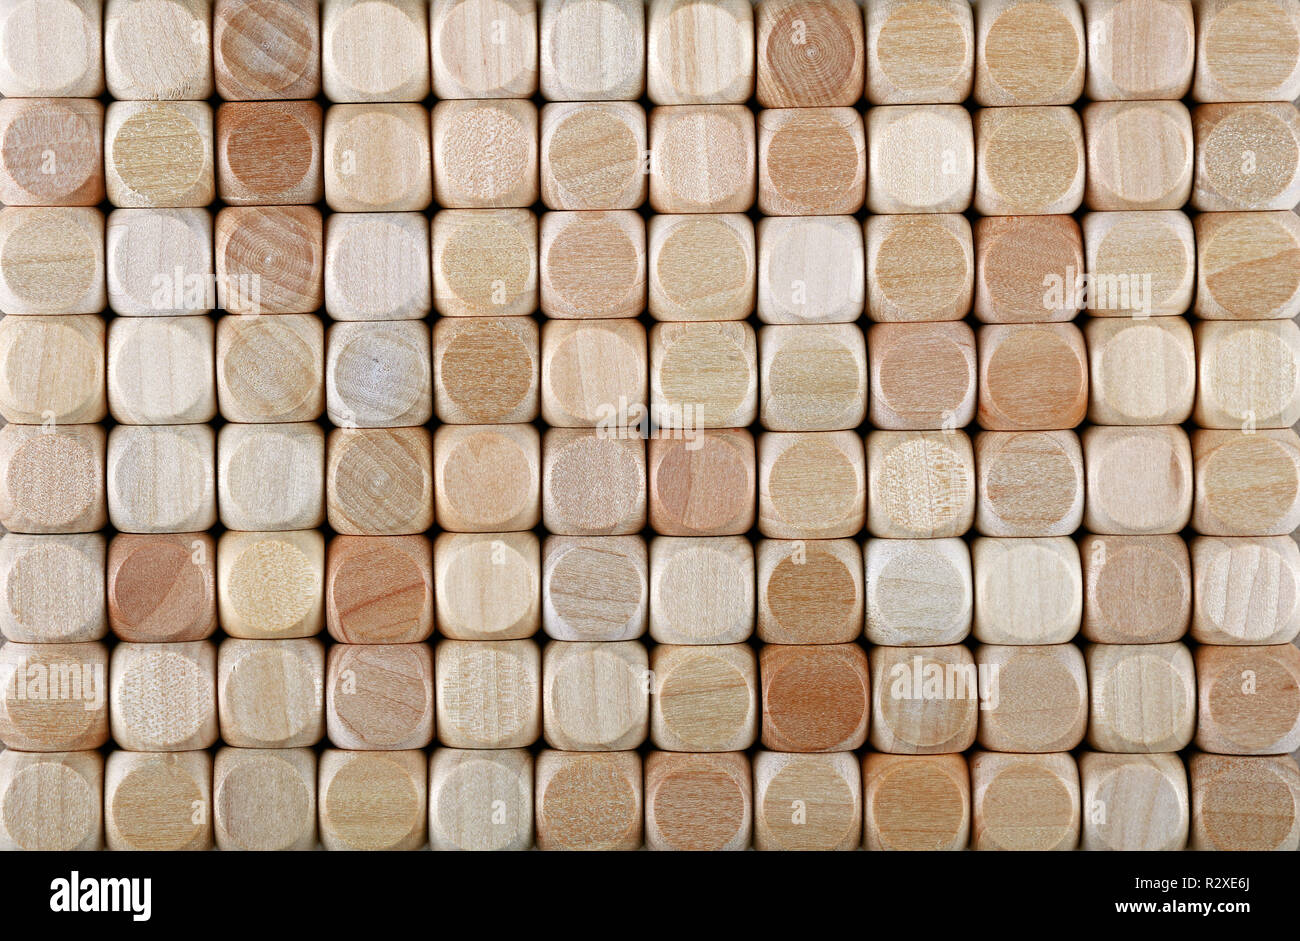 Chiudere la configurazione di sfondo di legno naturale a forma di dadi giocattolo di blocchi di costruzione, elevata angolo visuale, direttamente sopra Foto Stock